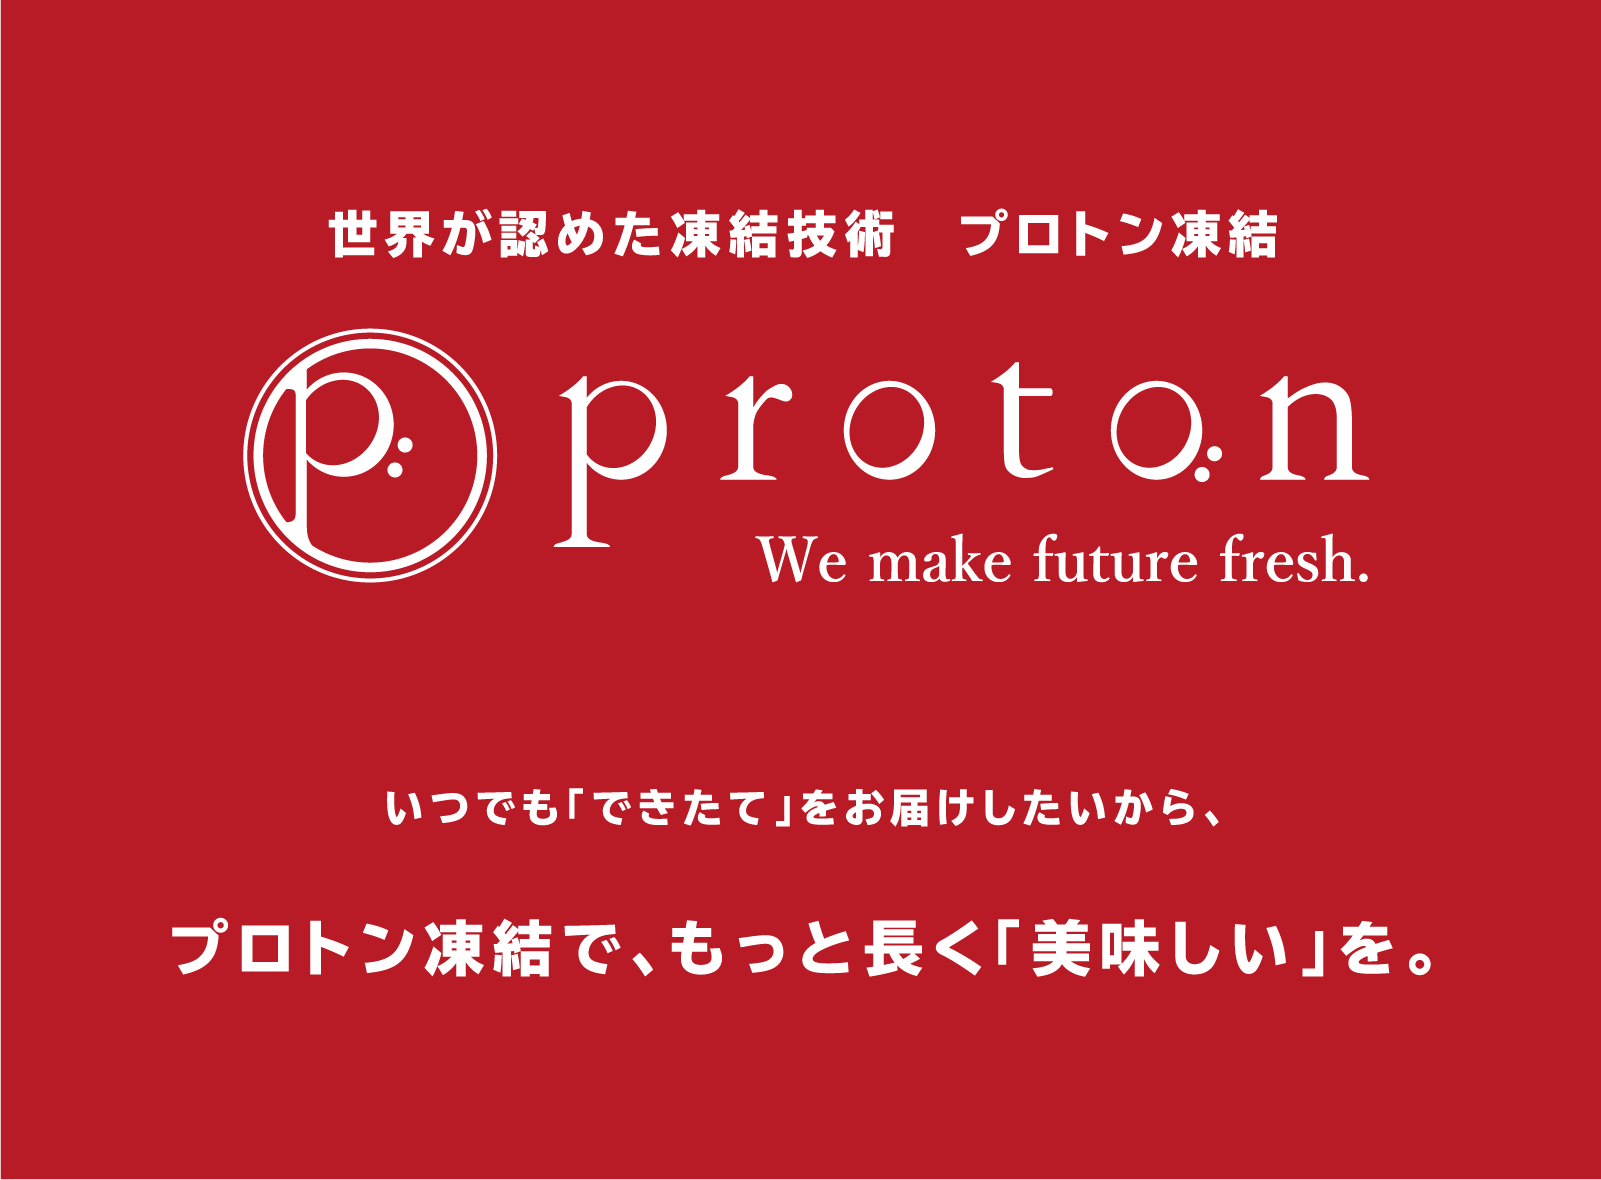 世界が認めた凍結技術「proton」プロトン凍結 いつでも「できたて」をお届けしたいから、プロトン凍結で、もっと長く「美味しい」を。